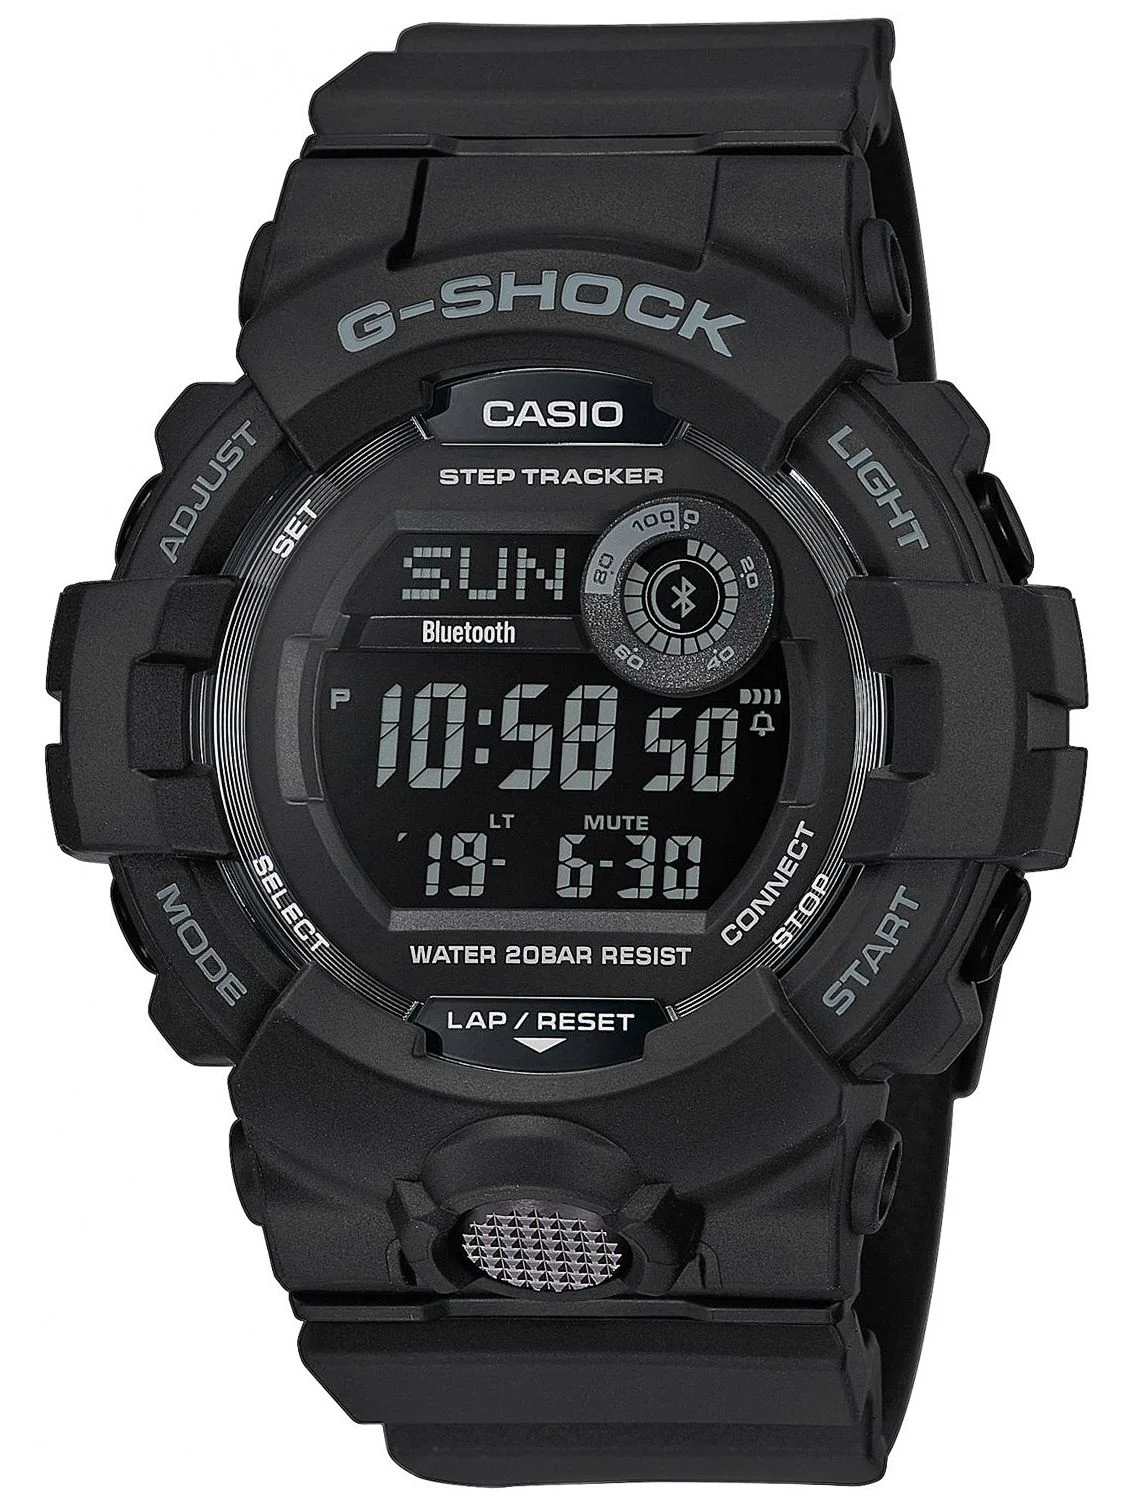 CASIO G-SHOCK GBD-800-1BER Schwarz Digital Uhr